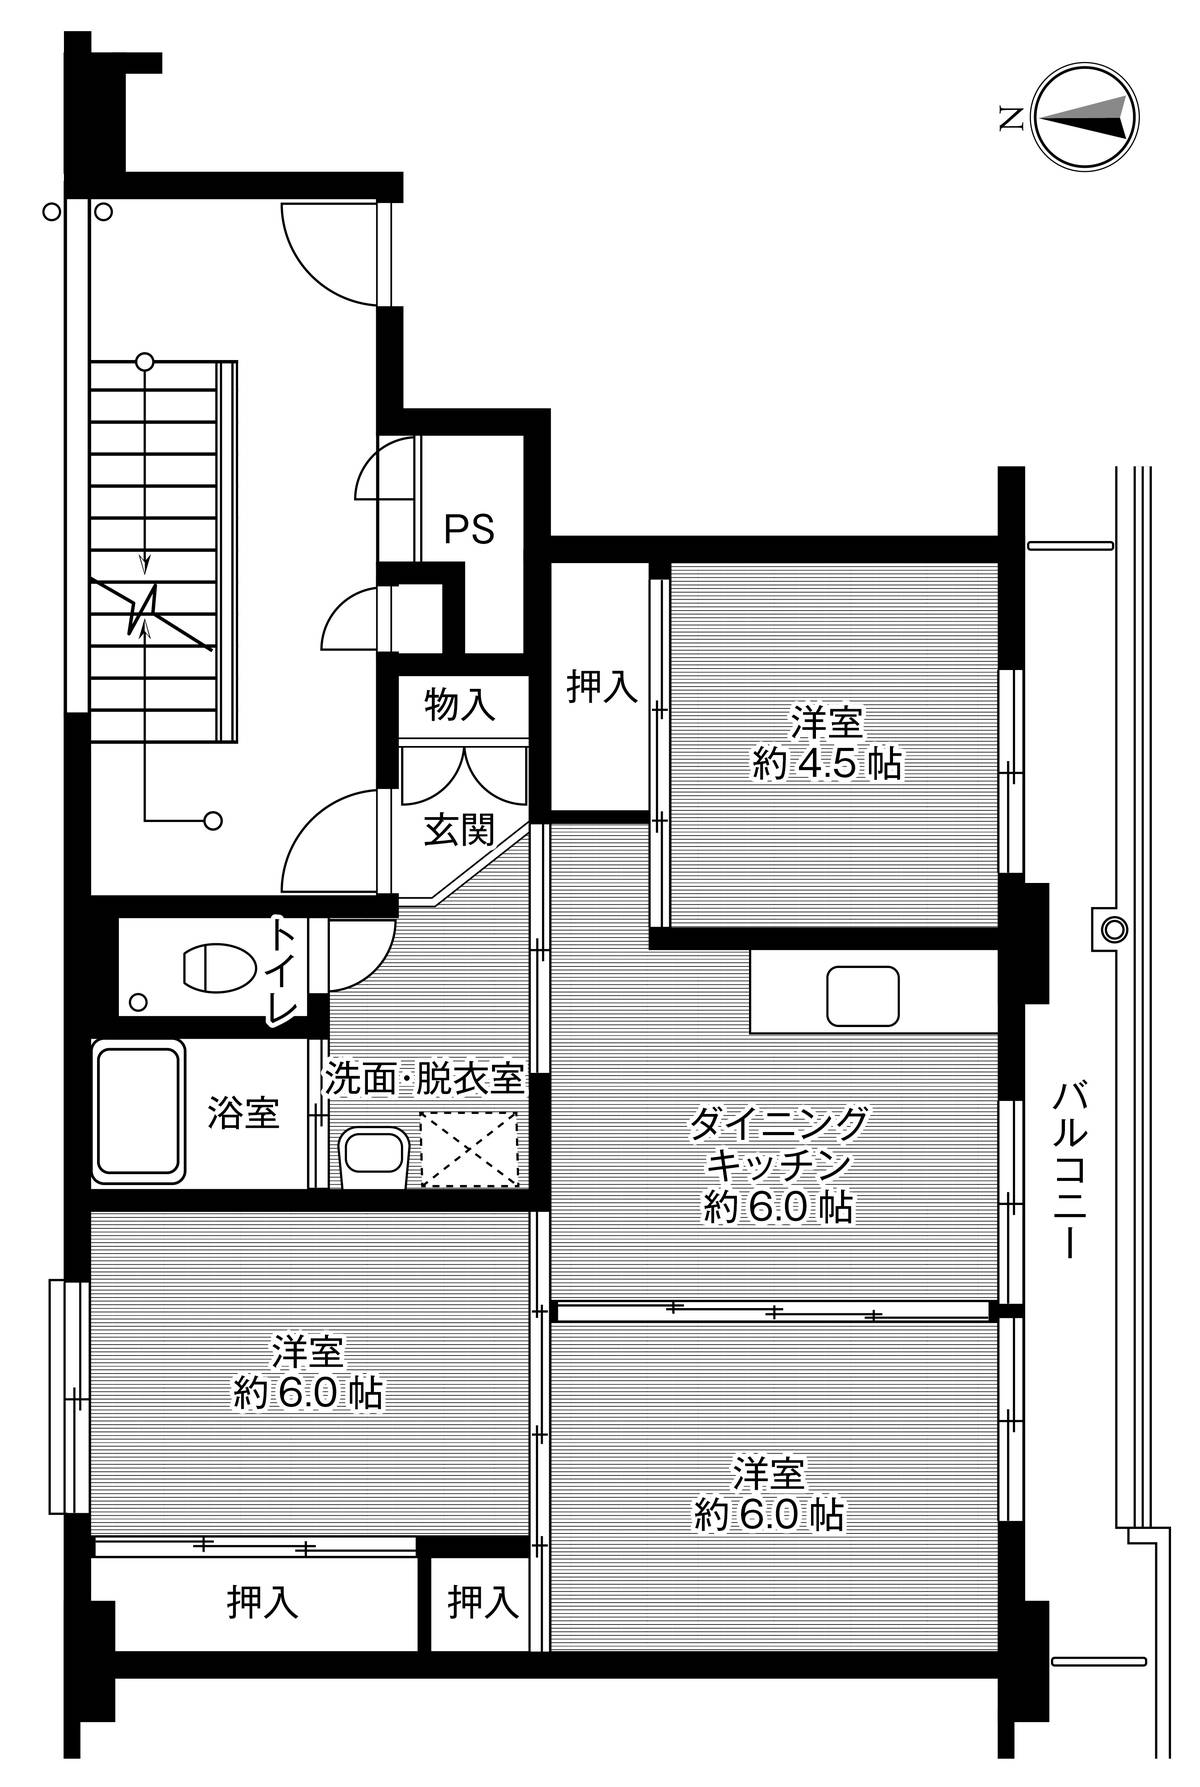 Sơ đồ phòng 3DK của Village House Kaminokawa ở Kawachi-gun